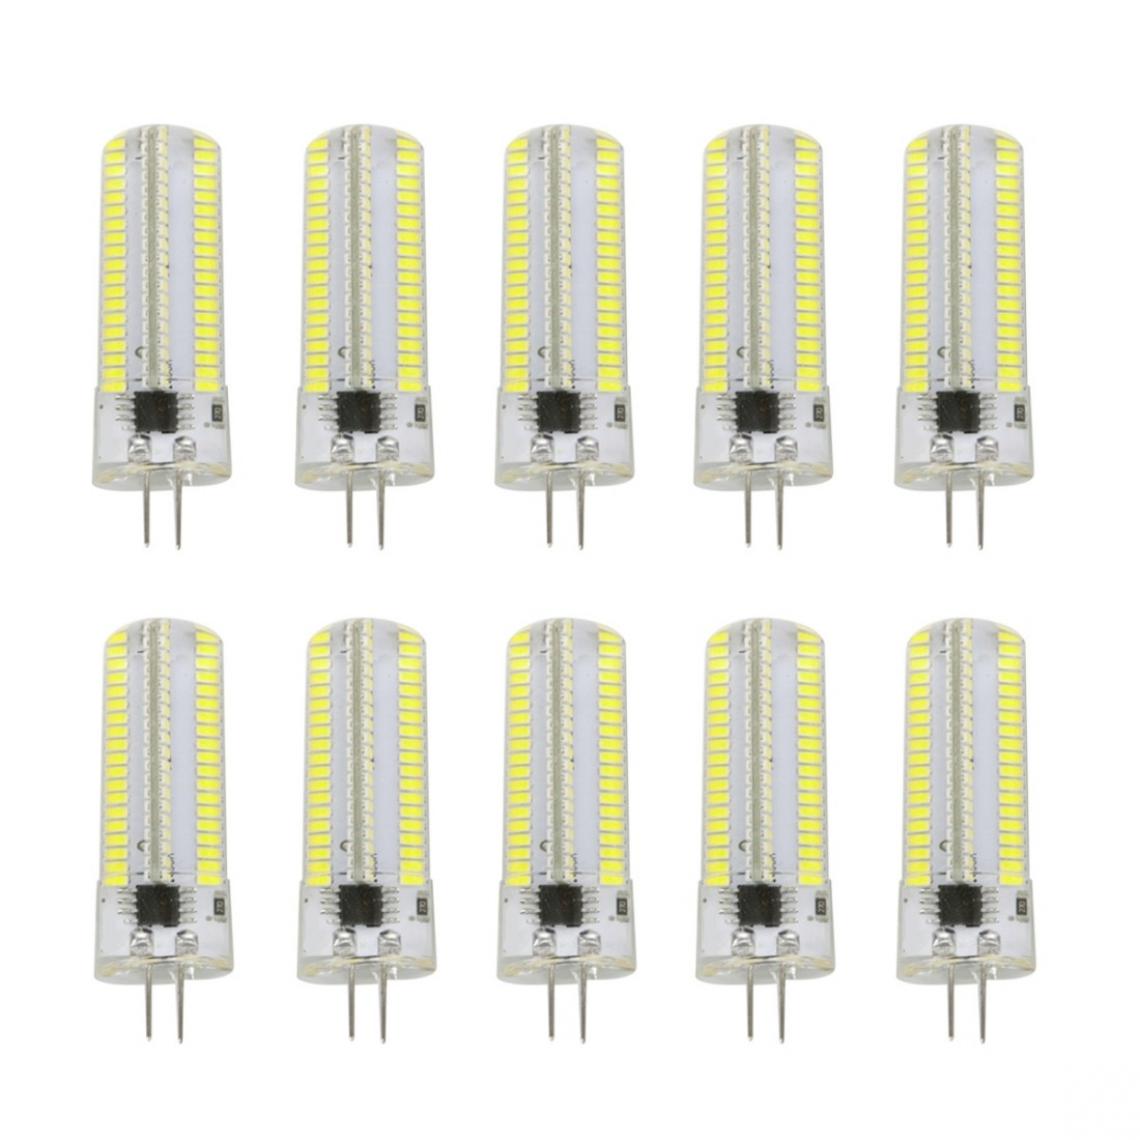 Wewoo - 10 PCS G4 7W 152 LED 3014 SMD 600-700 LM ampoules de maïs en silicone à intensité variable et blanc froidCA 220V - Ampoules LED